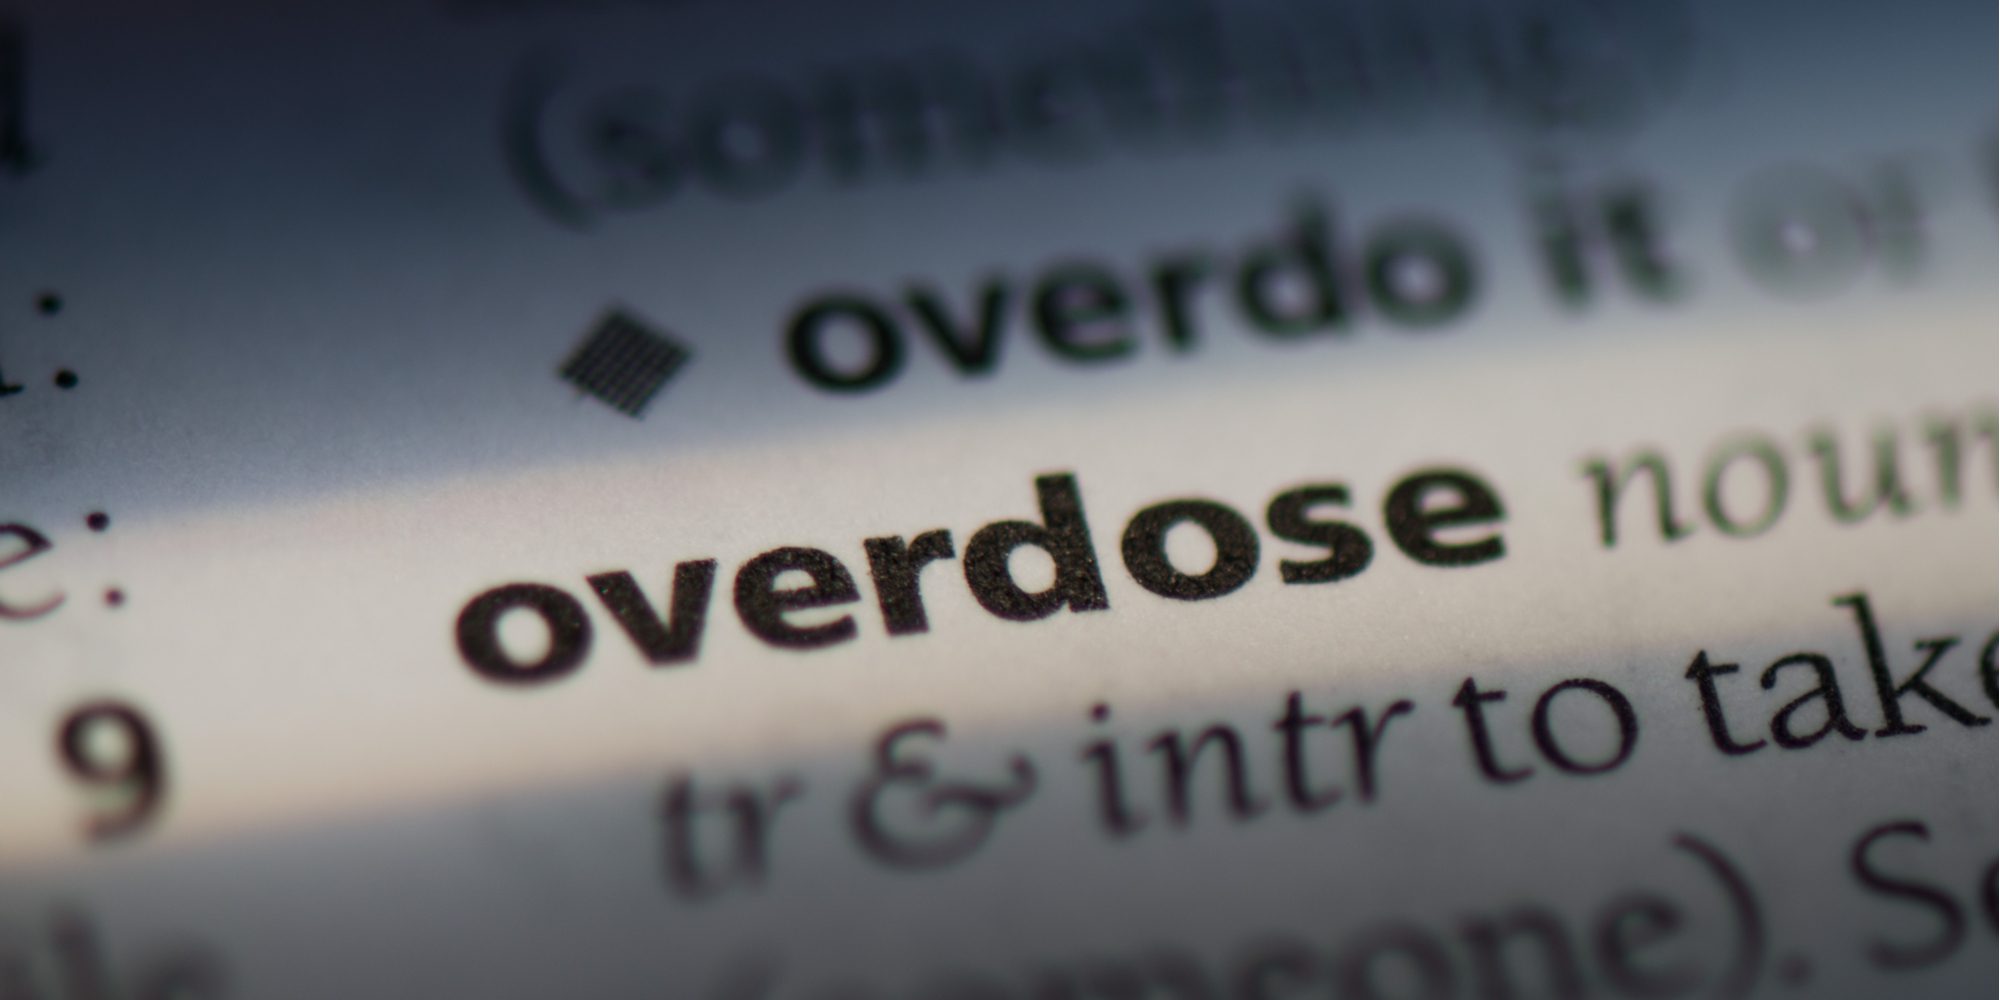 Florida overdoses